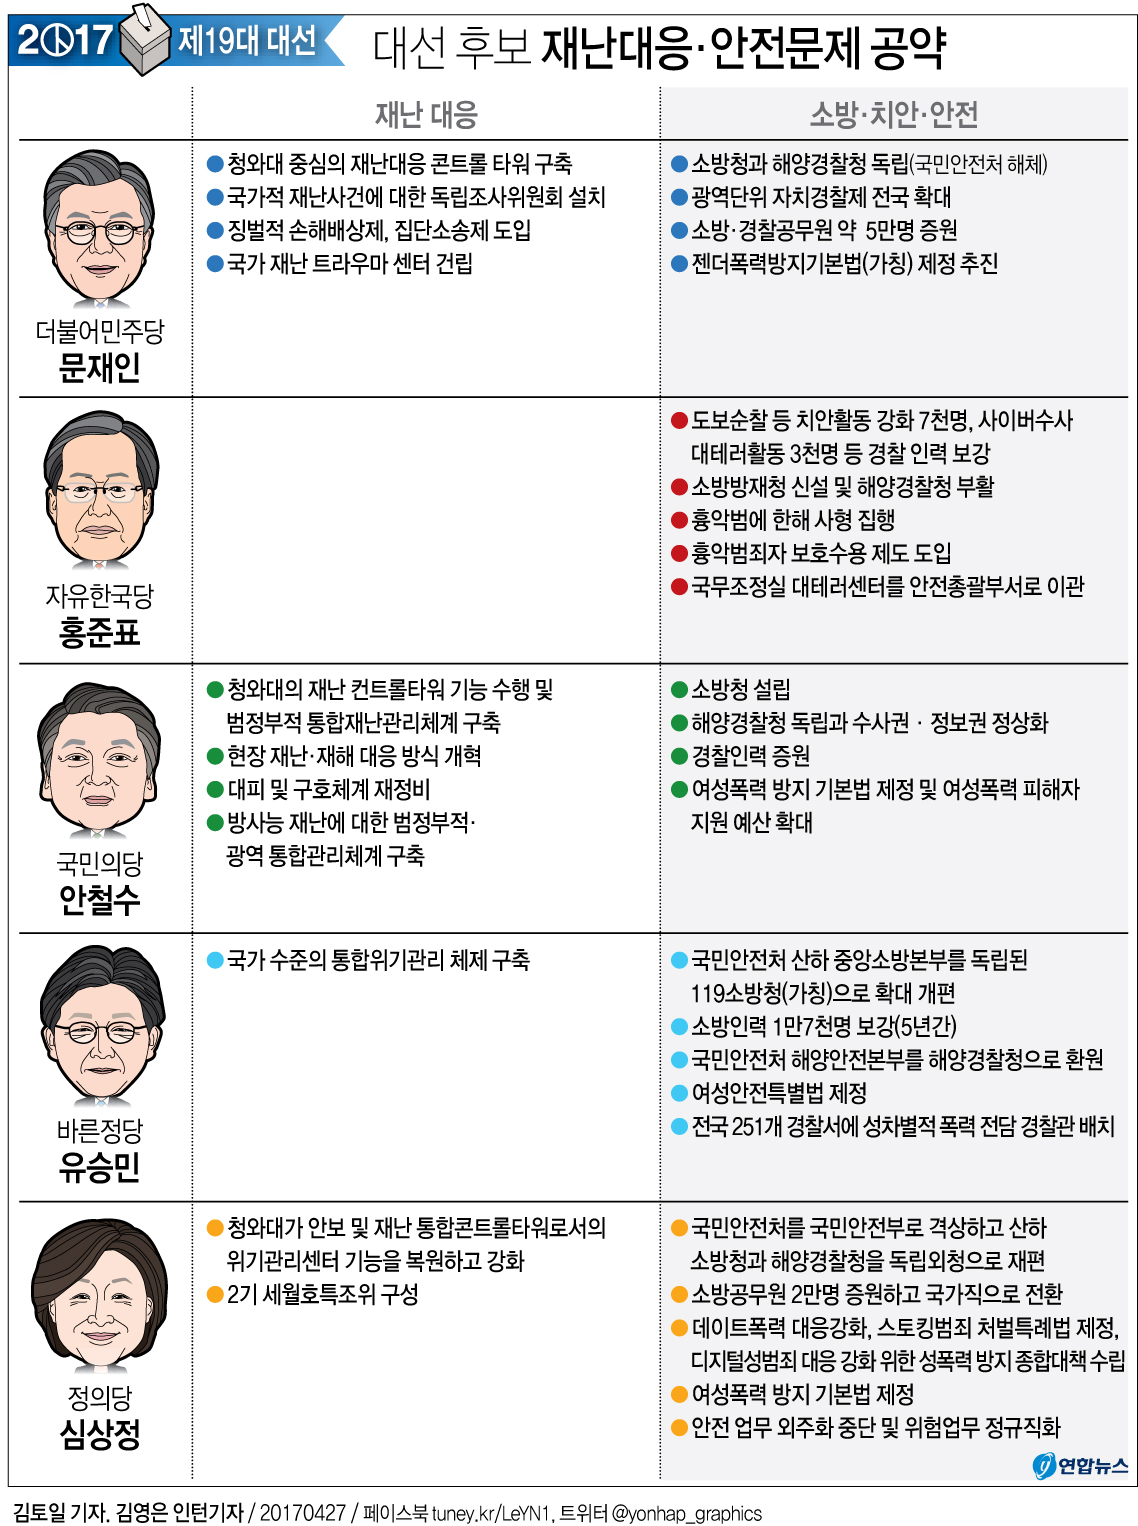 [그래픽] 대선 후보 재난대응·안전문제 공약